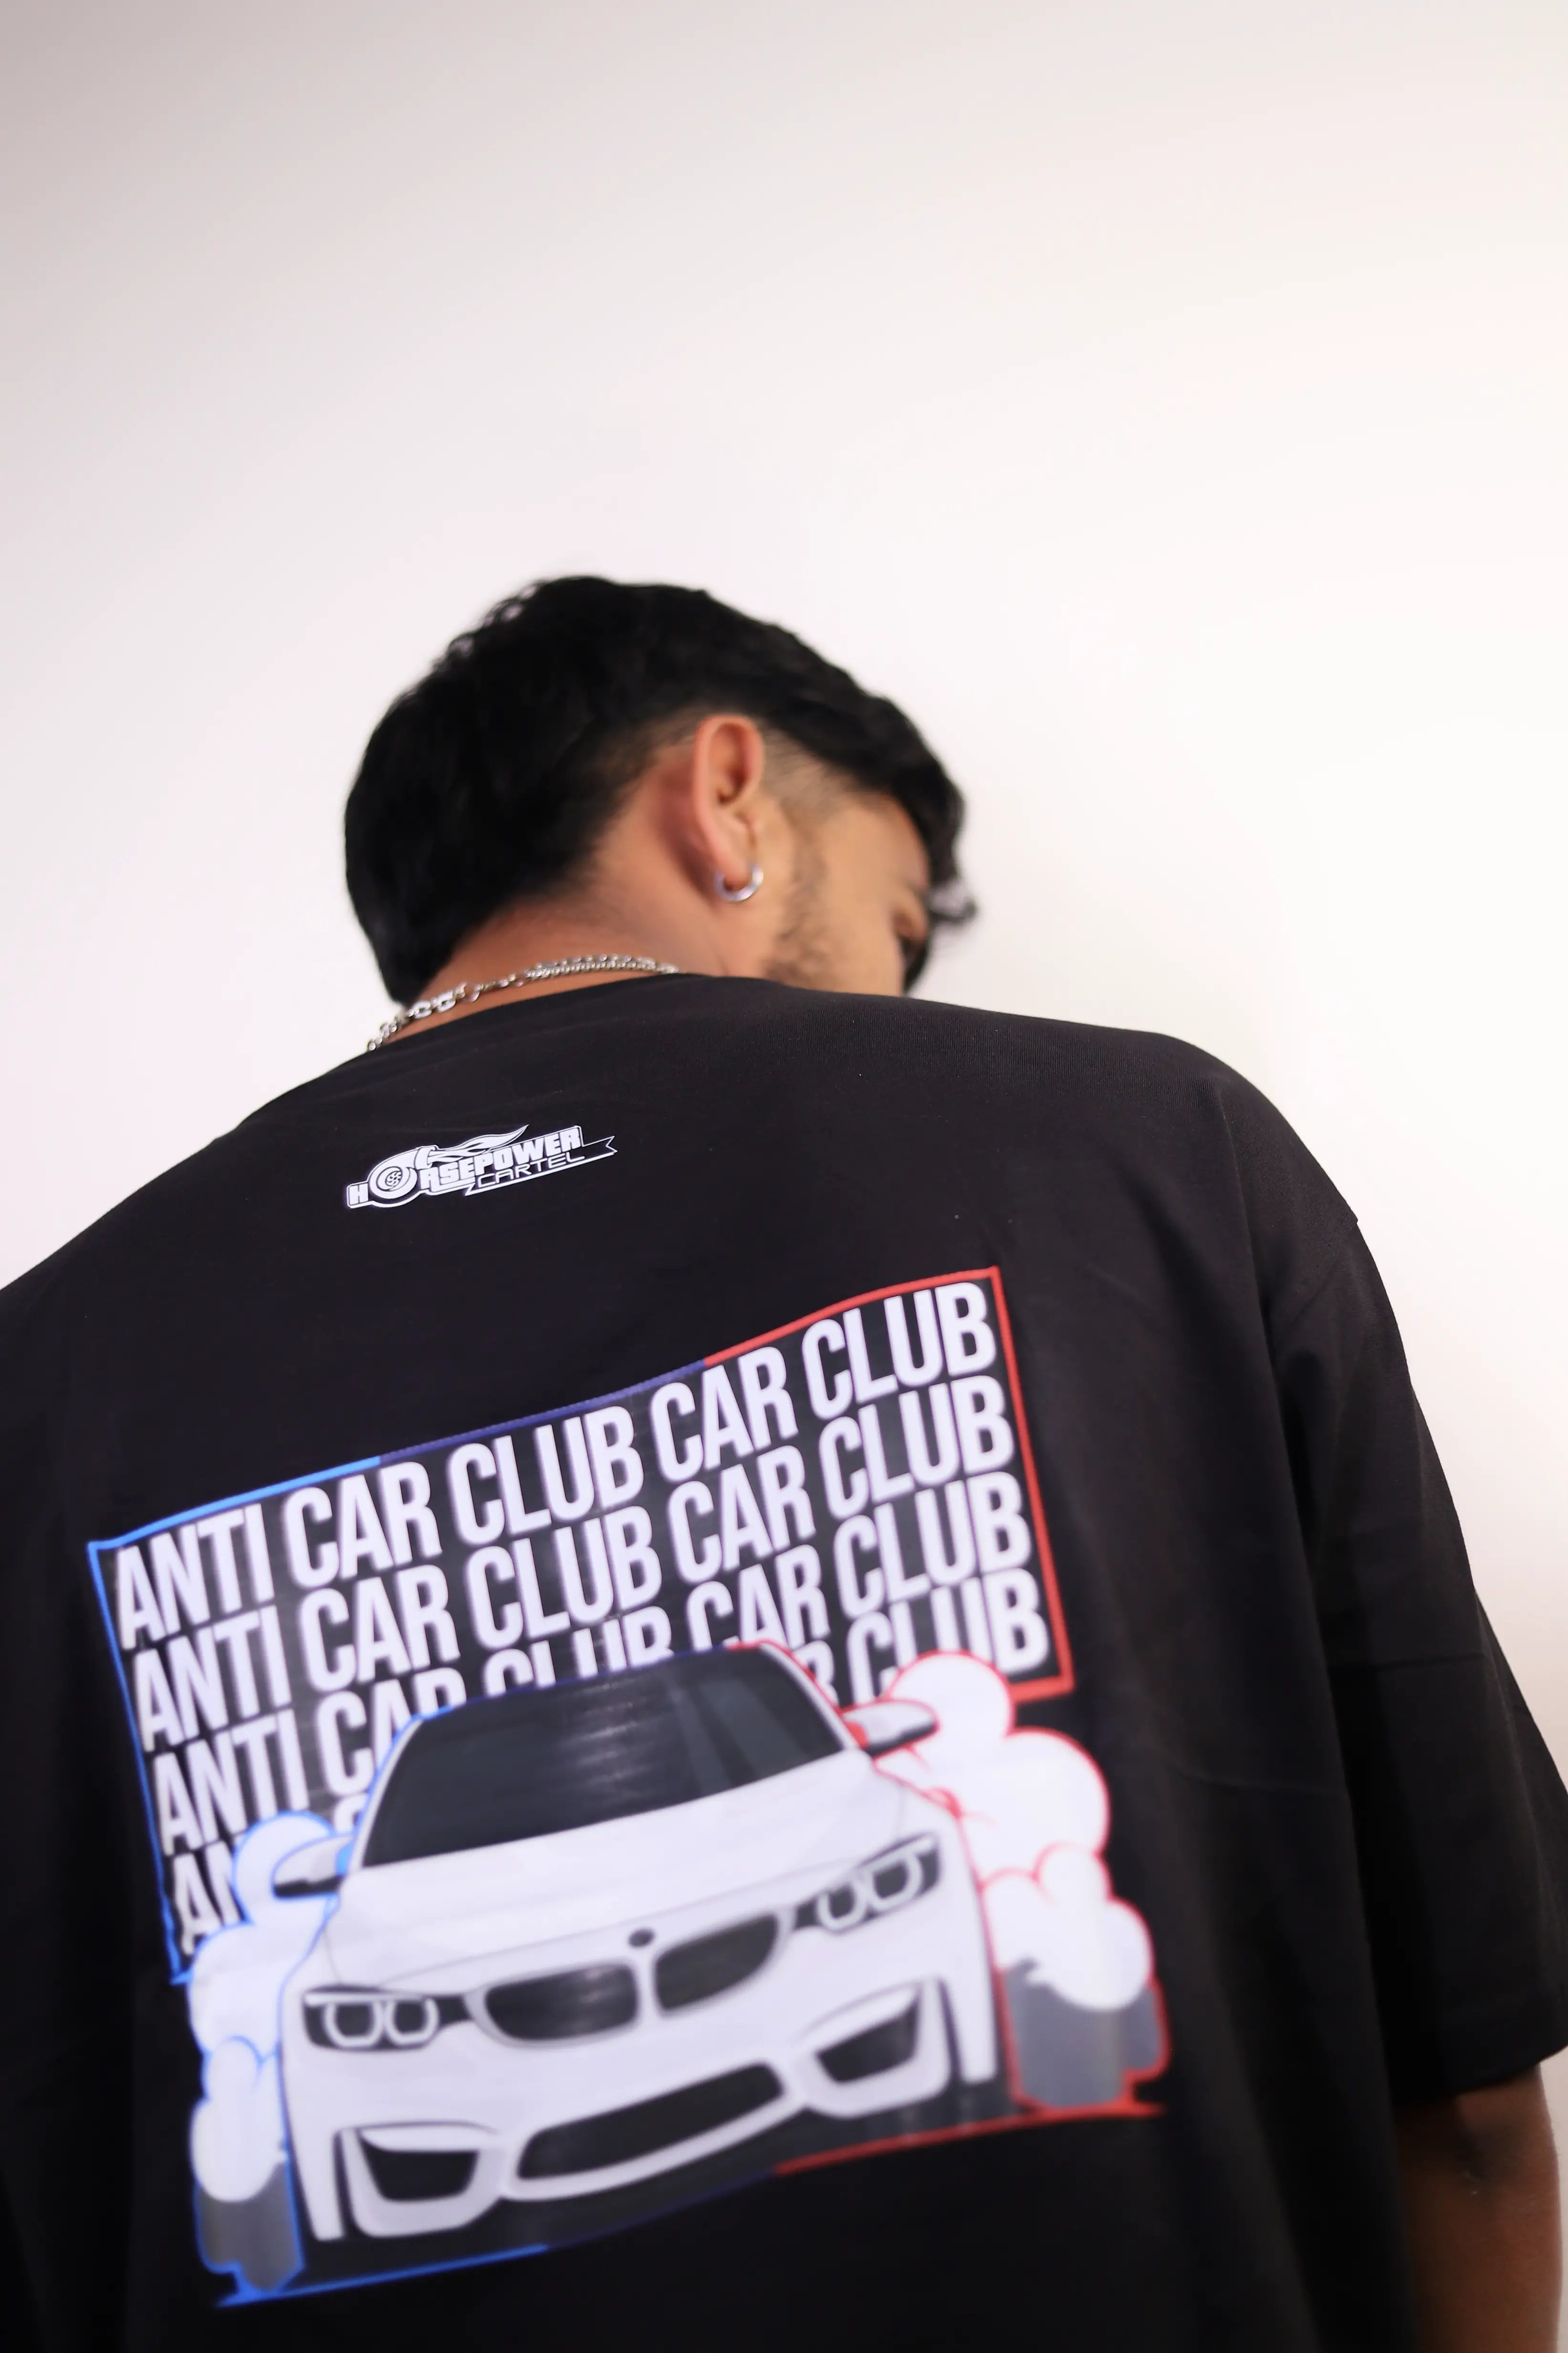 Anti car club Car Club (Black)